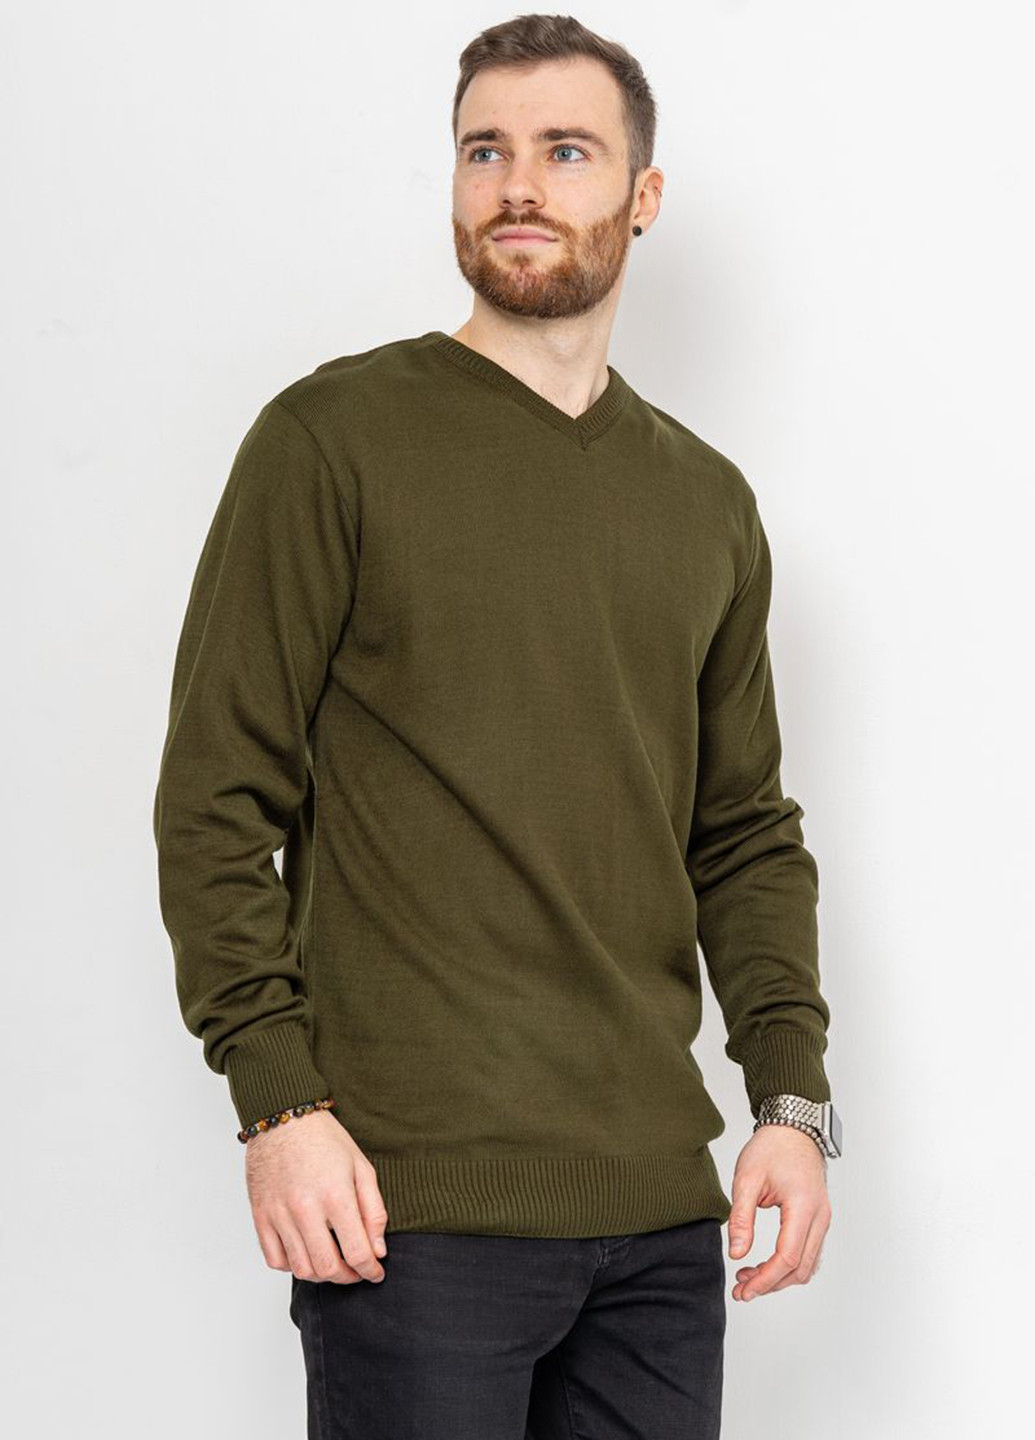 Оливковый (хаки) демисезонный пуловер пуловер Ager